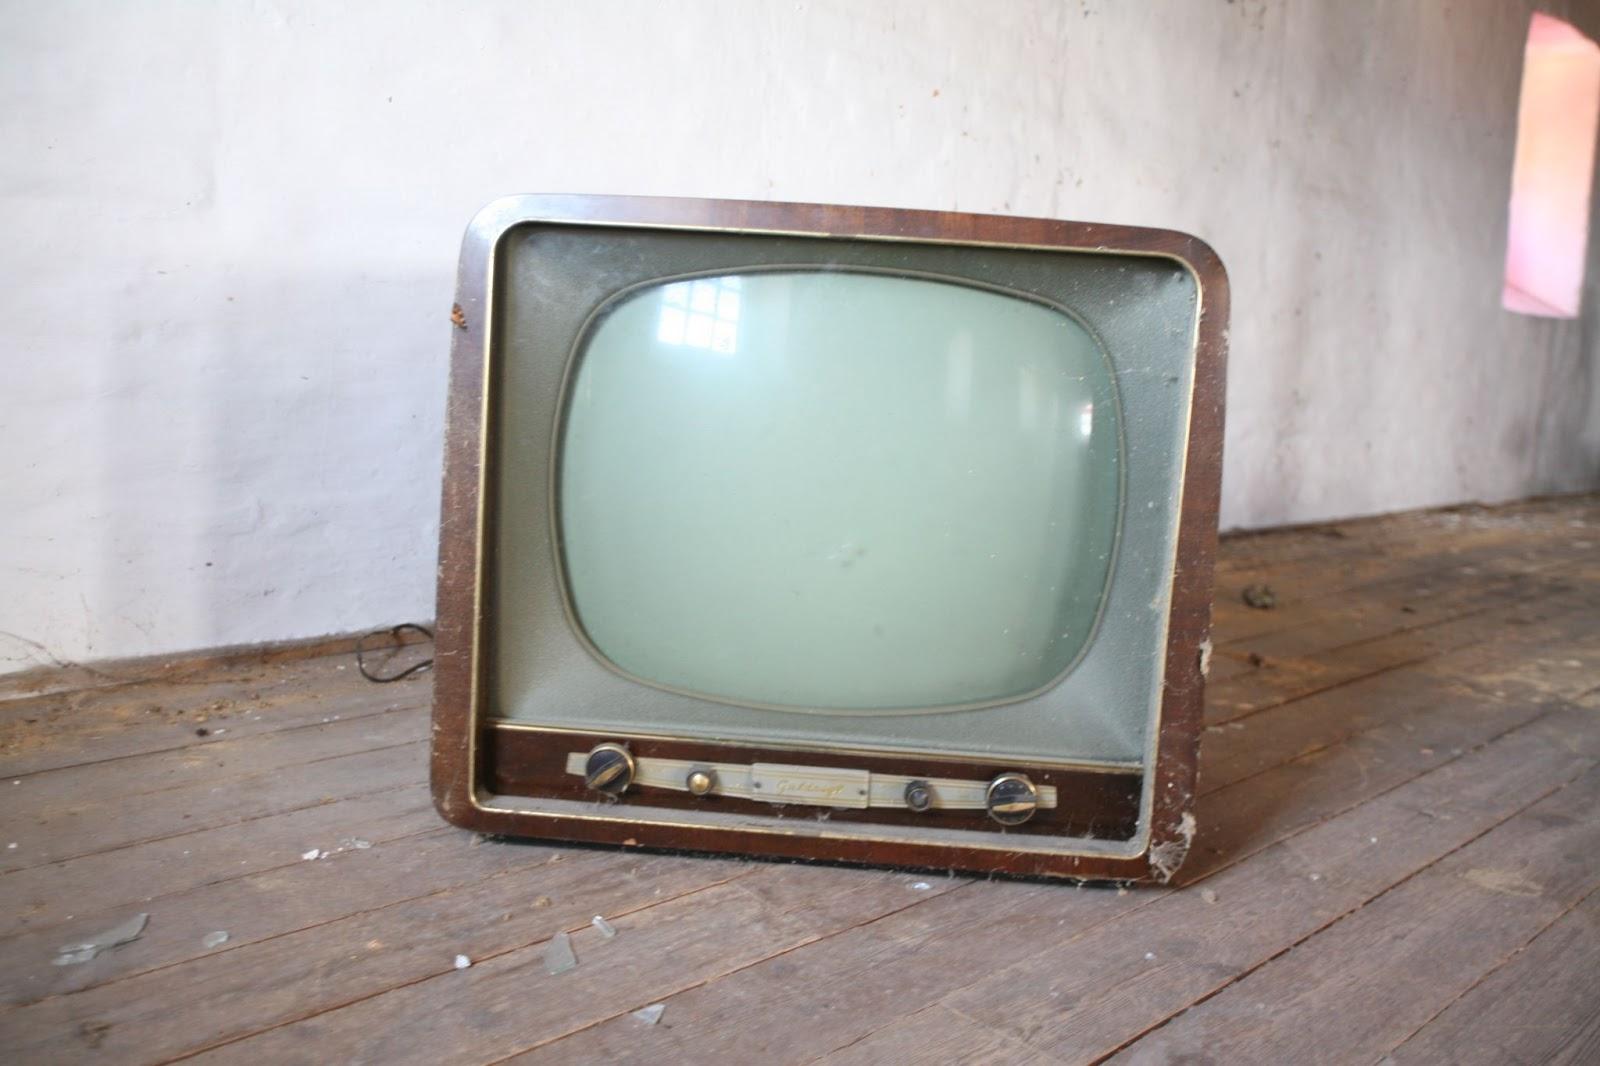 Kur priduoti seną televizorių? /